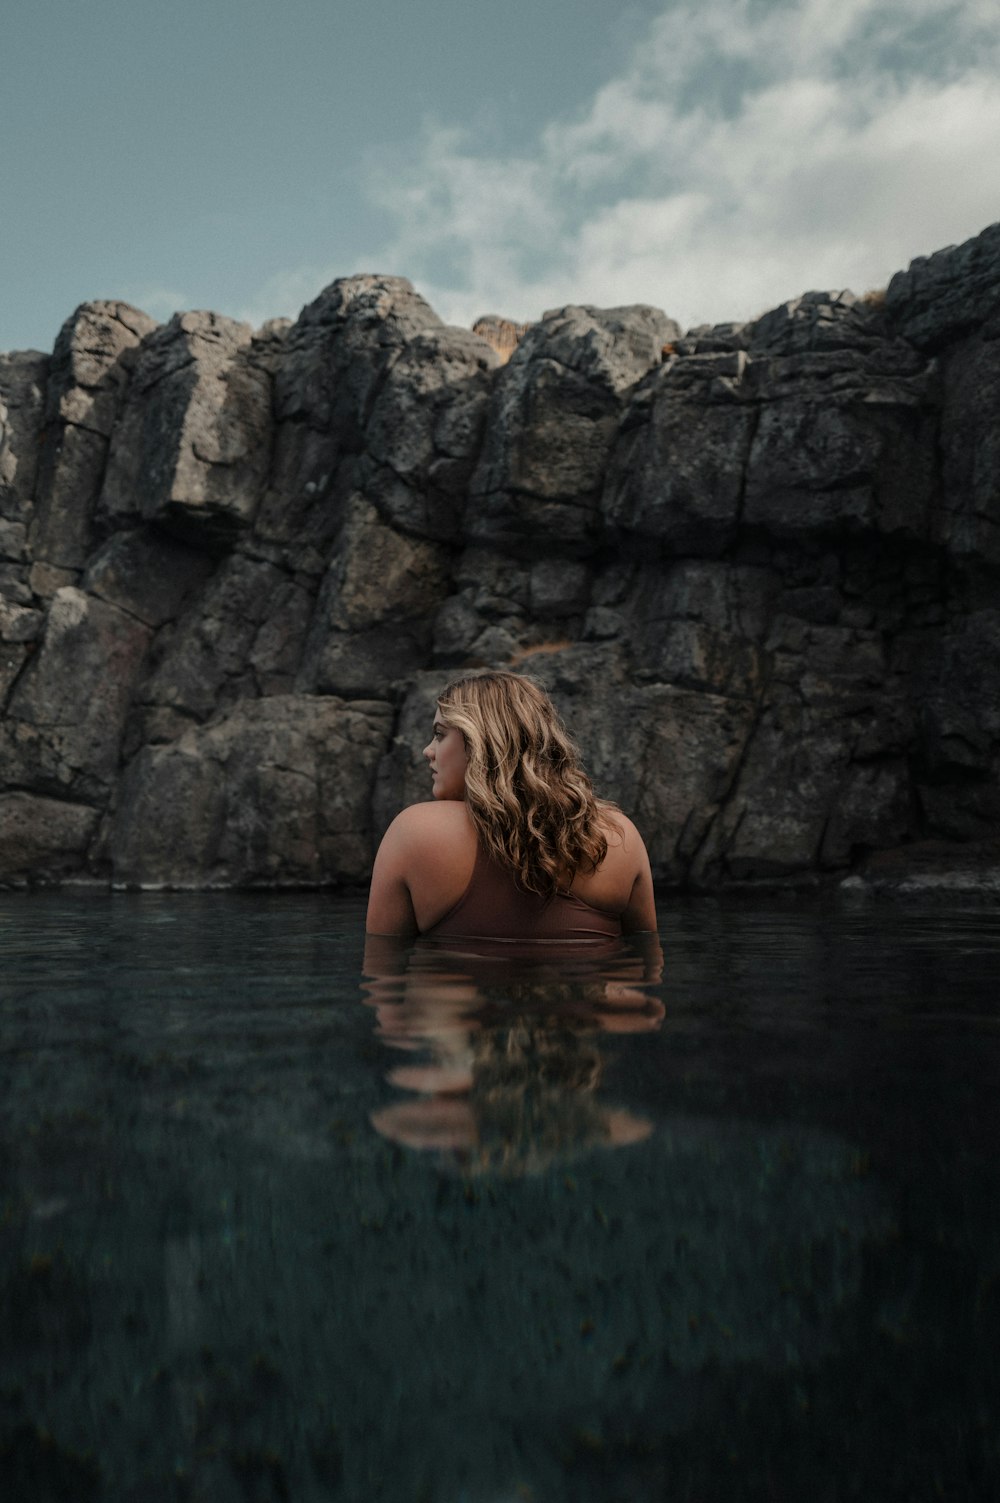 Una donna in uno specchio d'acqua con rocce sullo sfondo